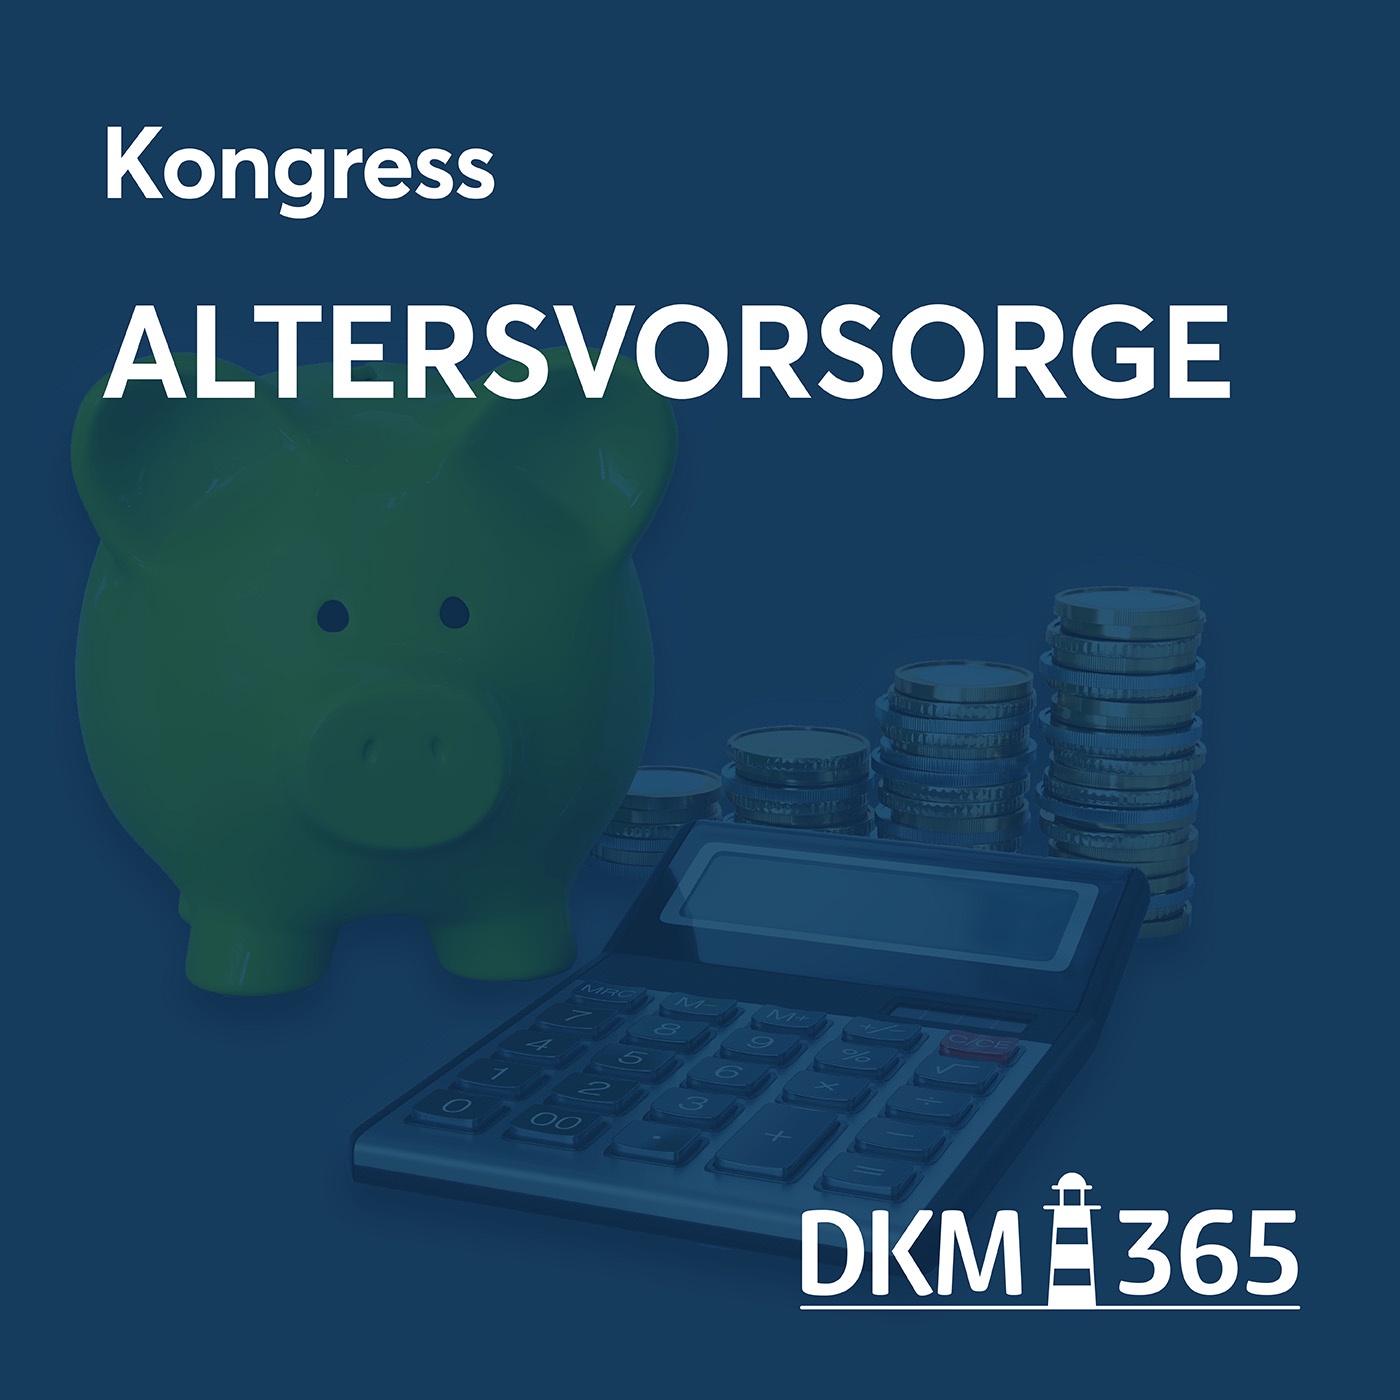 DKM OnStage - Kongress Altersvorsorge mit Prof. Michael Hauer, Karsten Schmithals und Thorsten Uhrbach